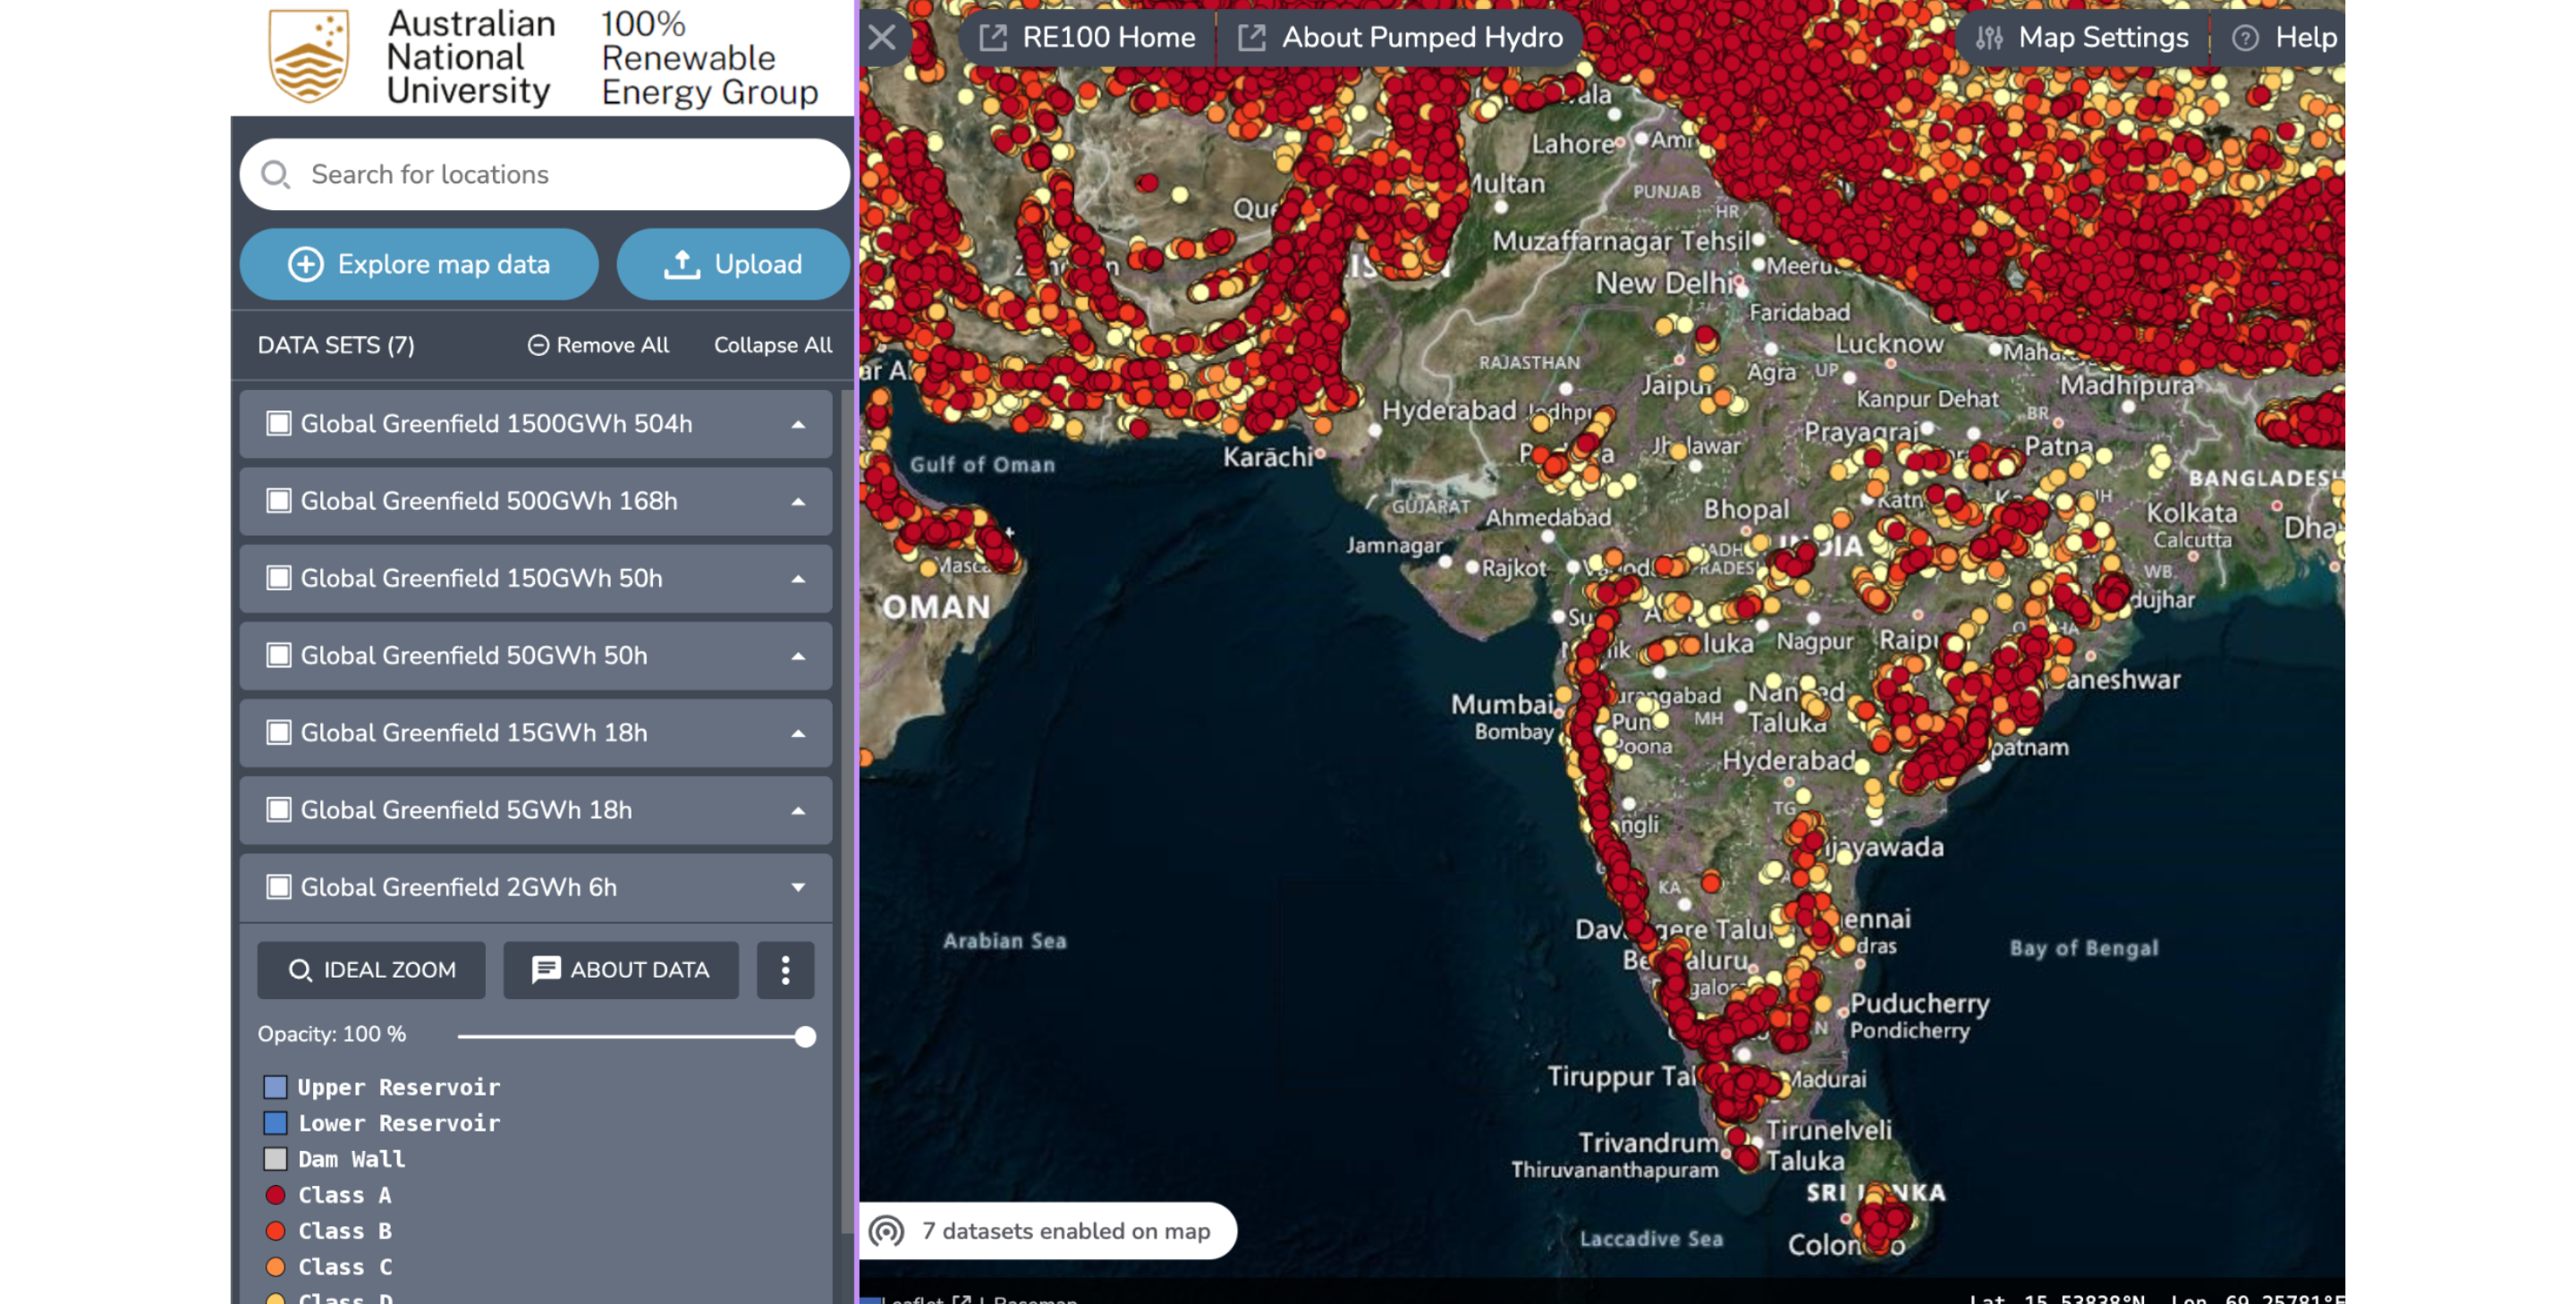 根据澳大利亚国立大学的全球 GIS 绿地地图集，印度的闭环抽水蓄能资源容量